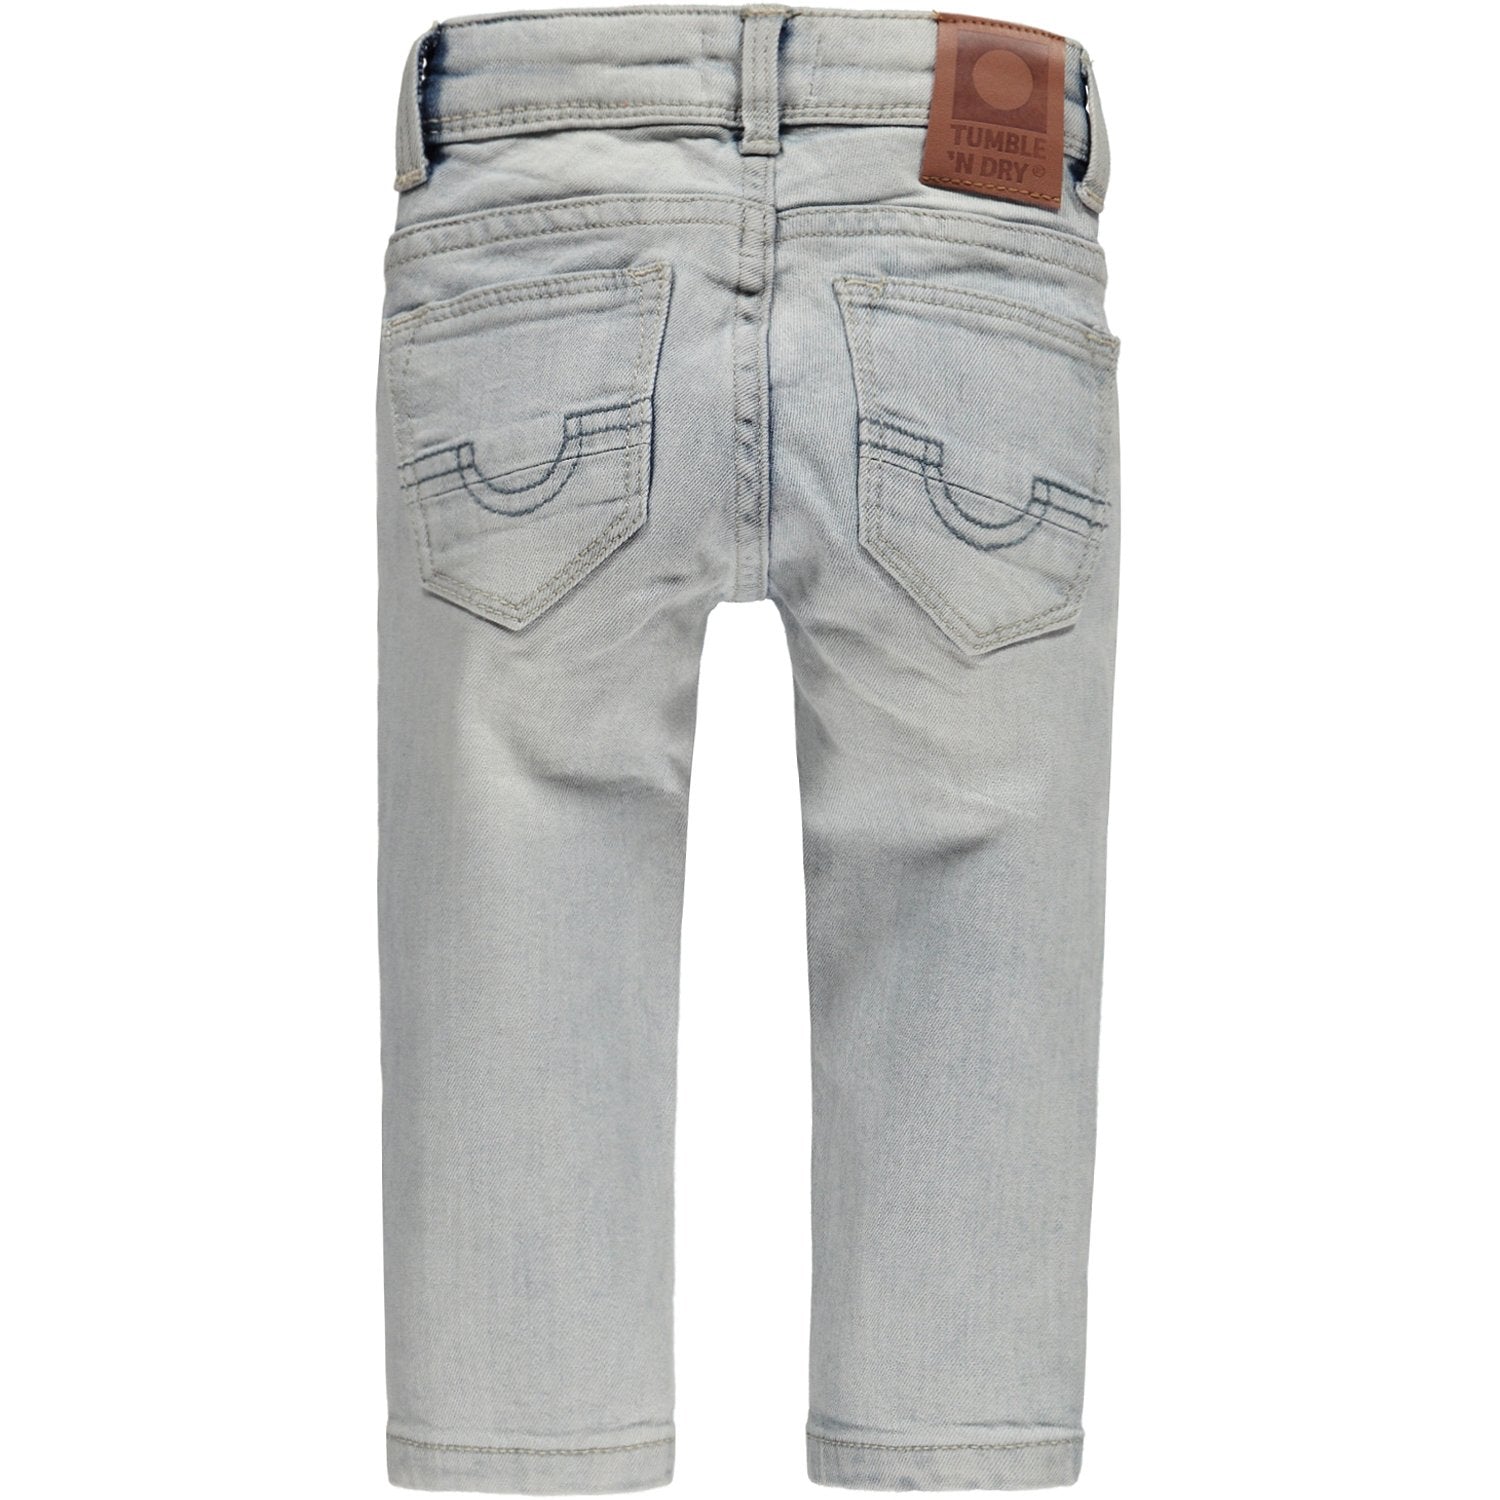 Baby Jongens Broek Jeans lang van Tumble 'n Dry in de kleur Denim bleach in maat 86.